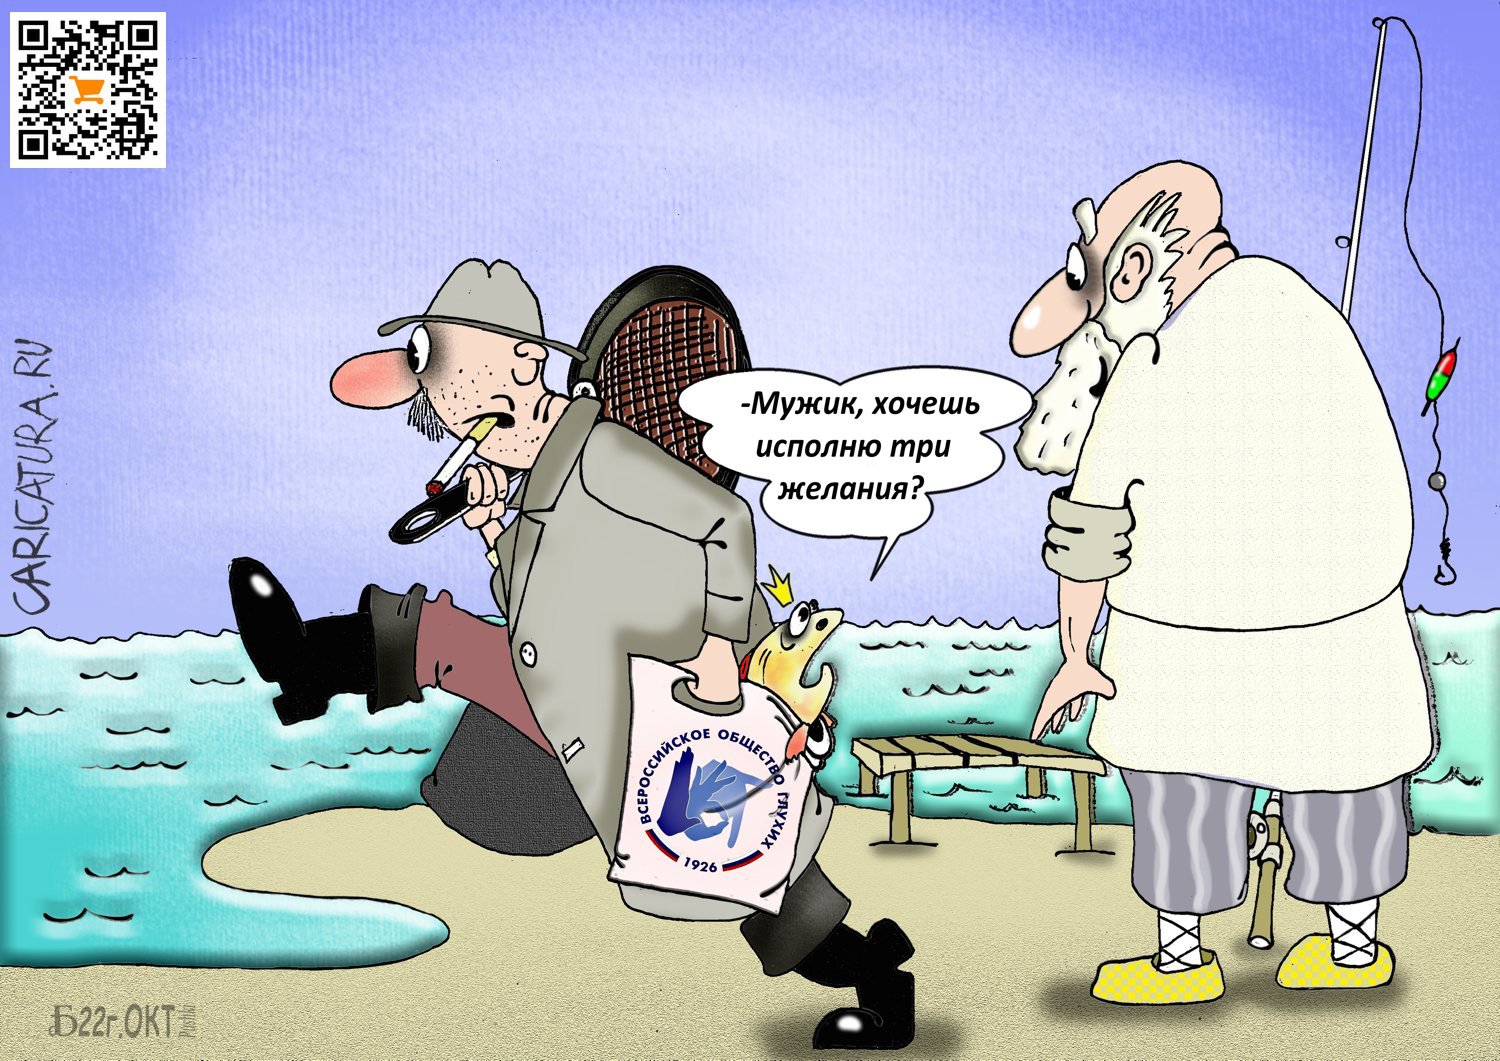 Карикатура "Проглухоем", Борис Демин